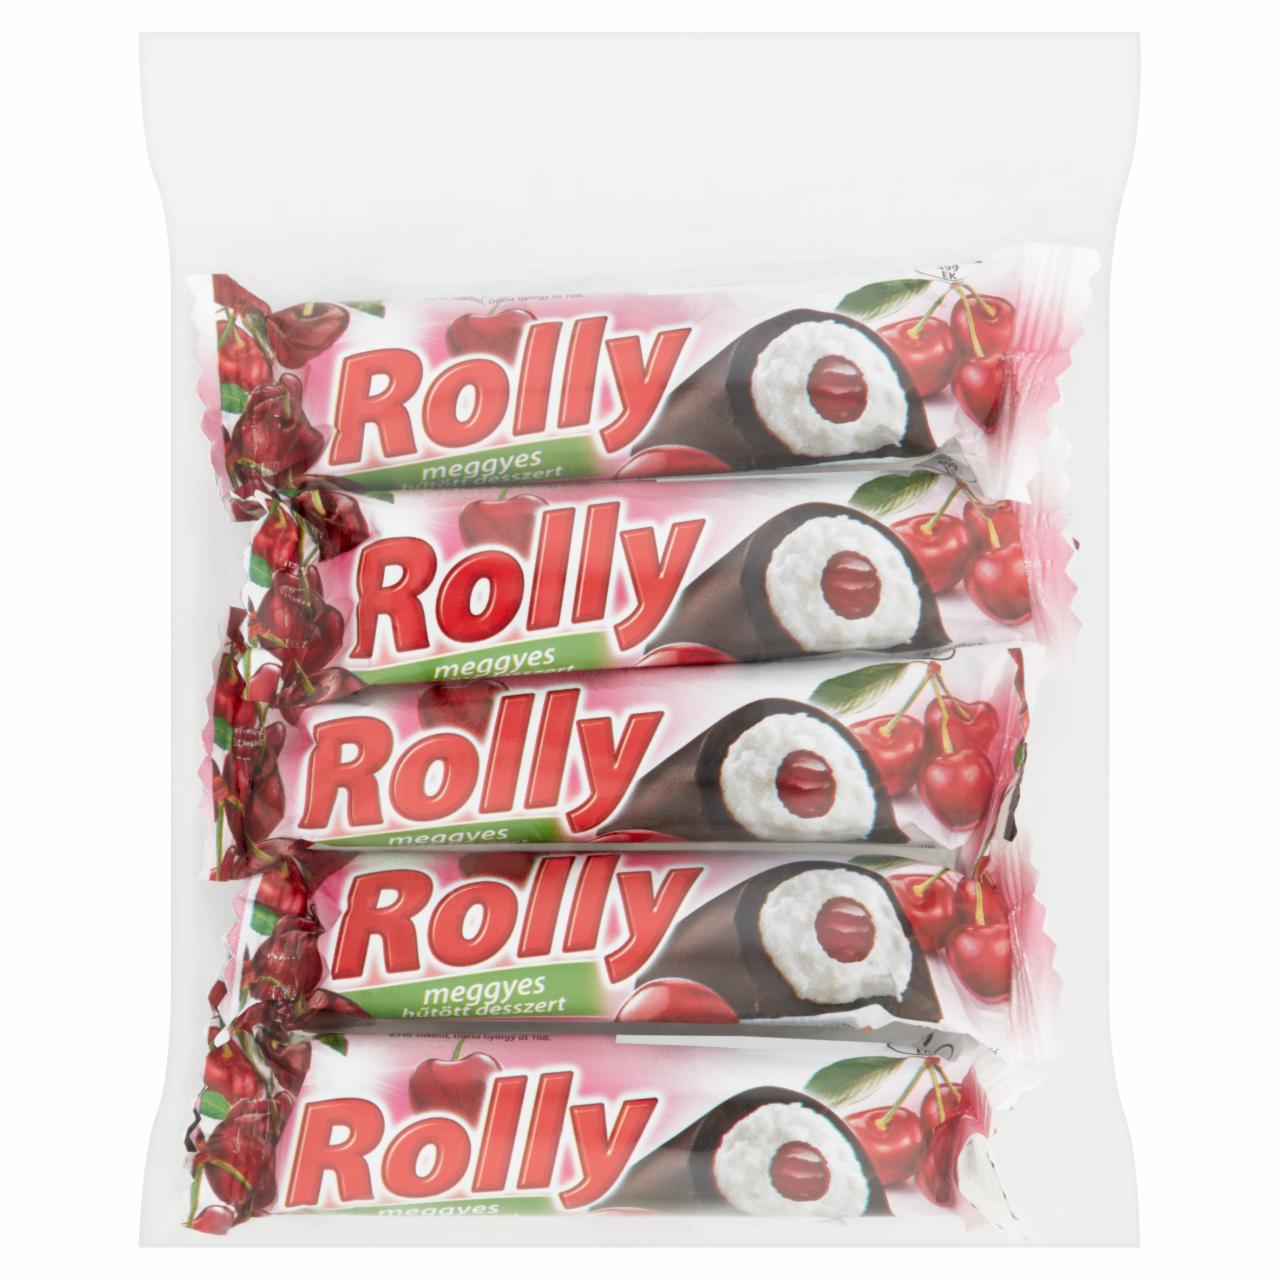 Képek - Rolly meggyes hűtött desszert 5 x 30 g